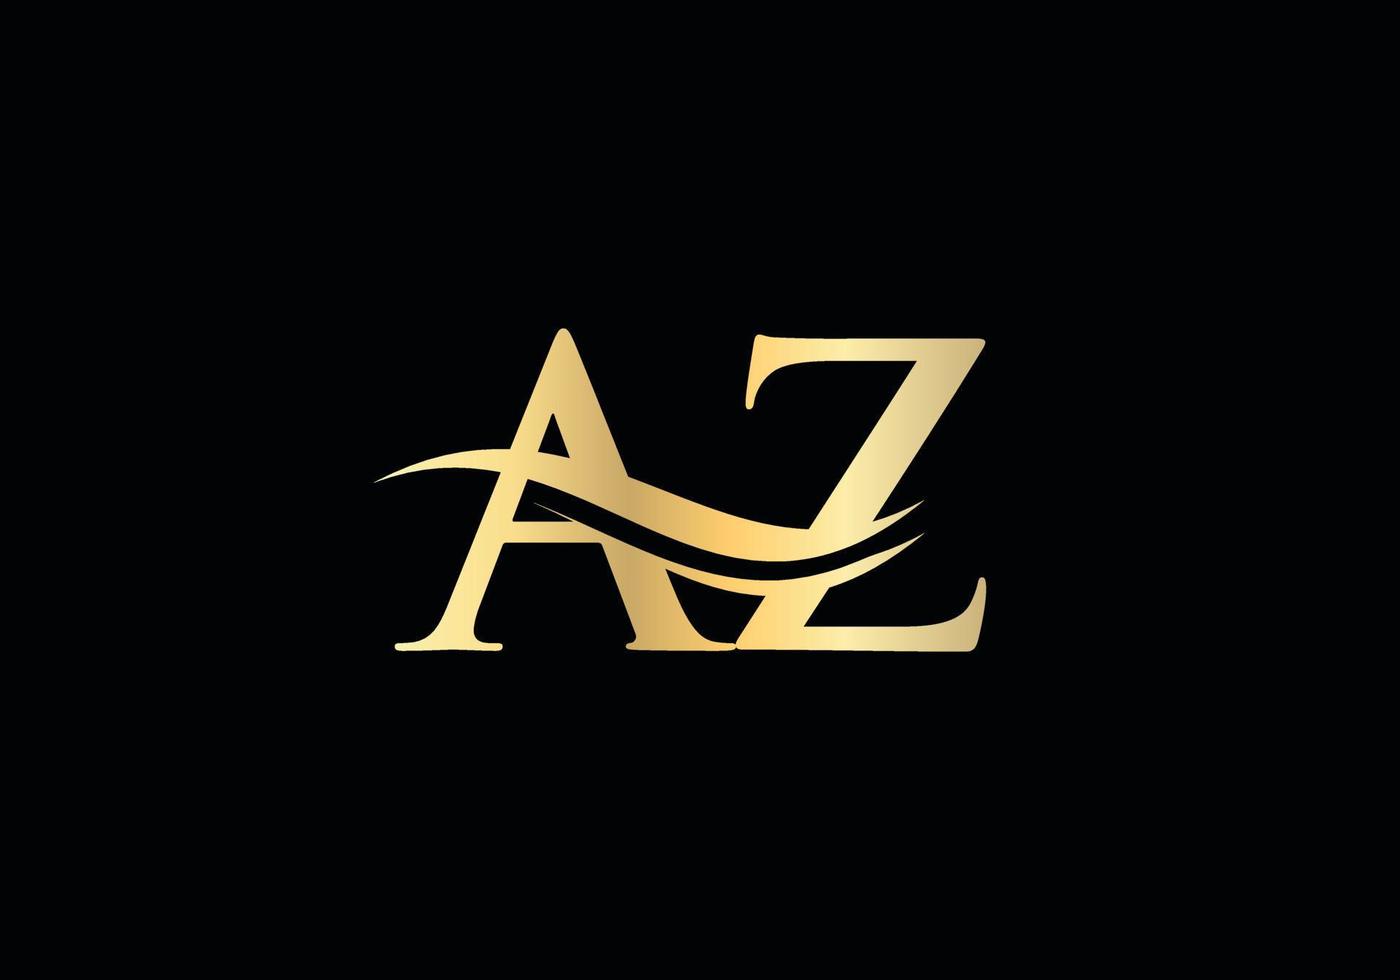 création de logo swoosh letter az pour l'identité de l'entreprise et de l'entreprise. logo az vague d'eau avec tendance moderne vecteur